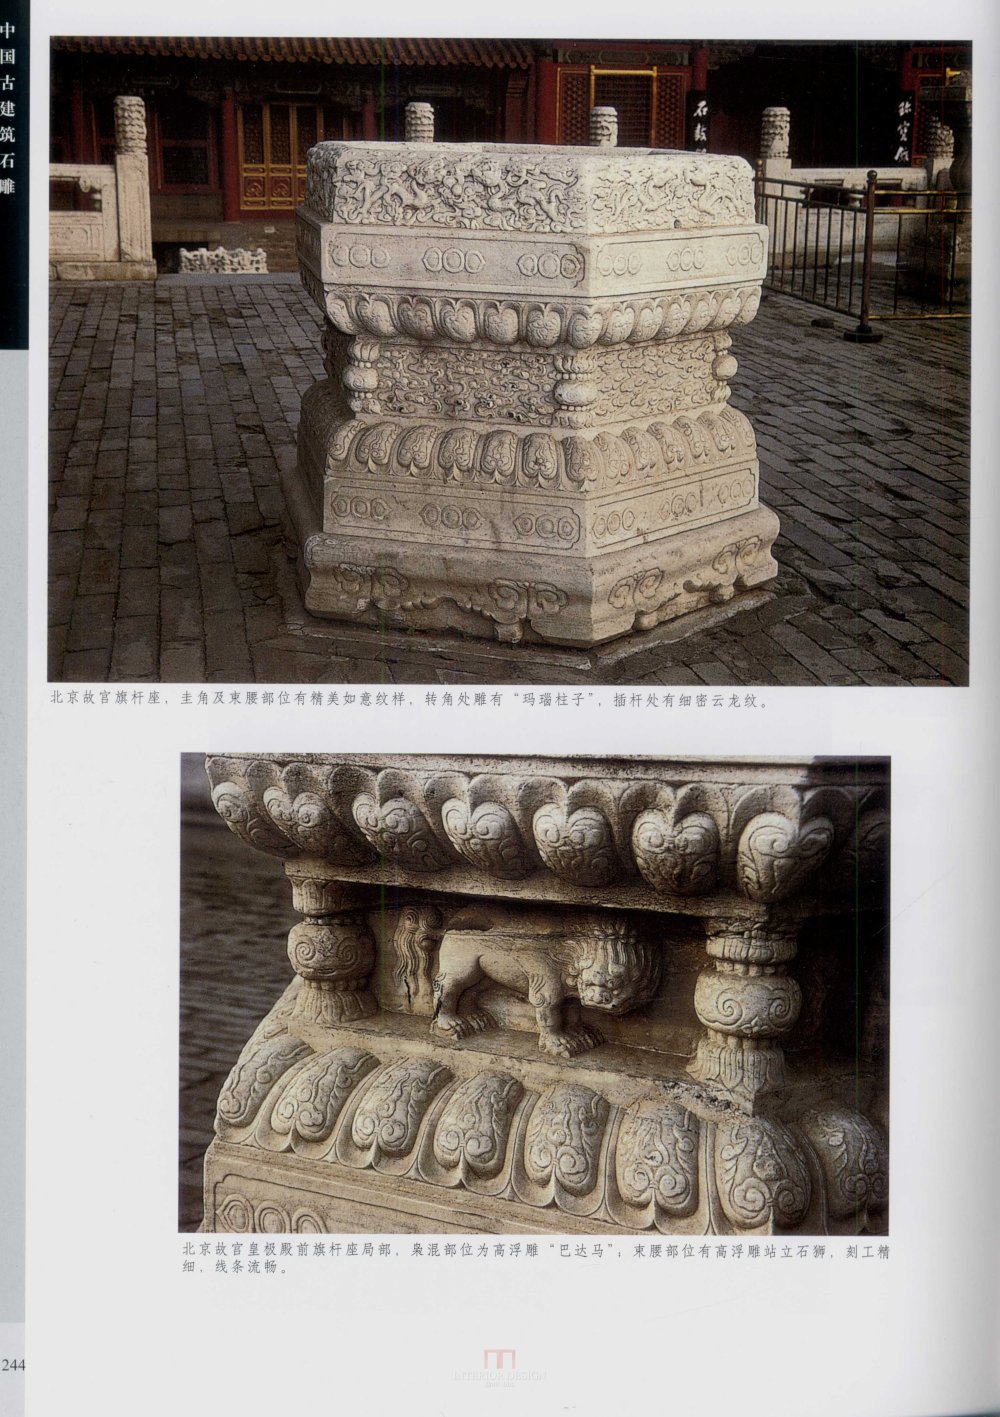 中国古代建筑 石雕_kobe 0251.jpg